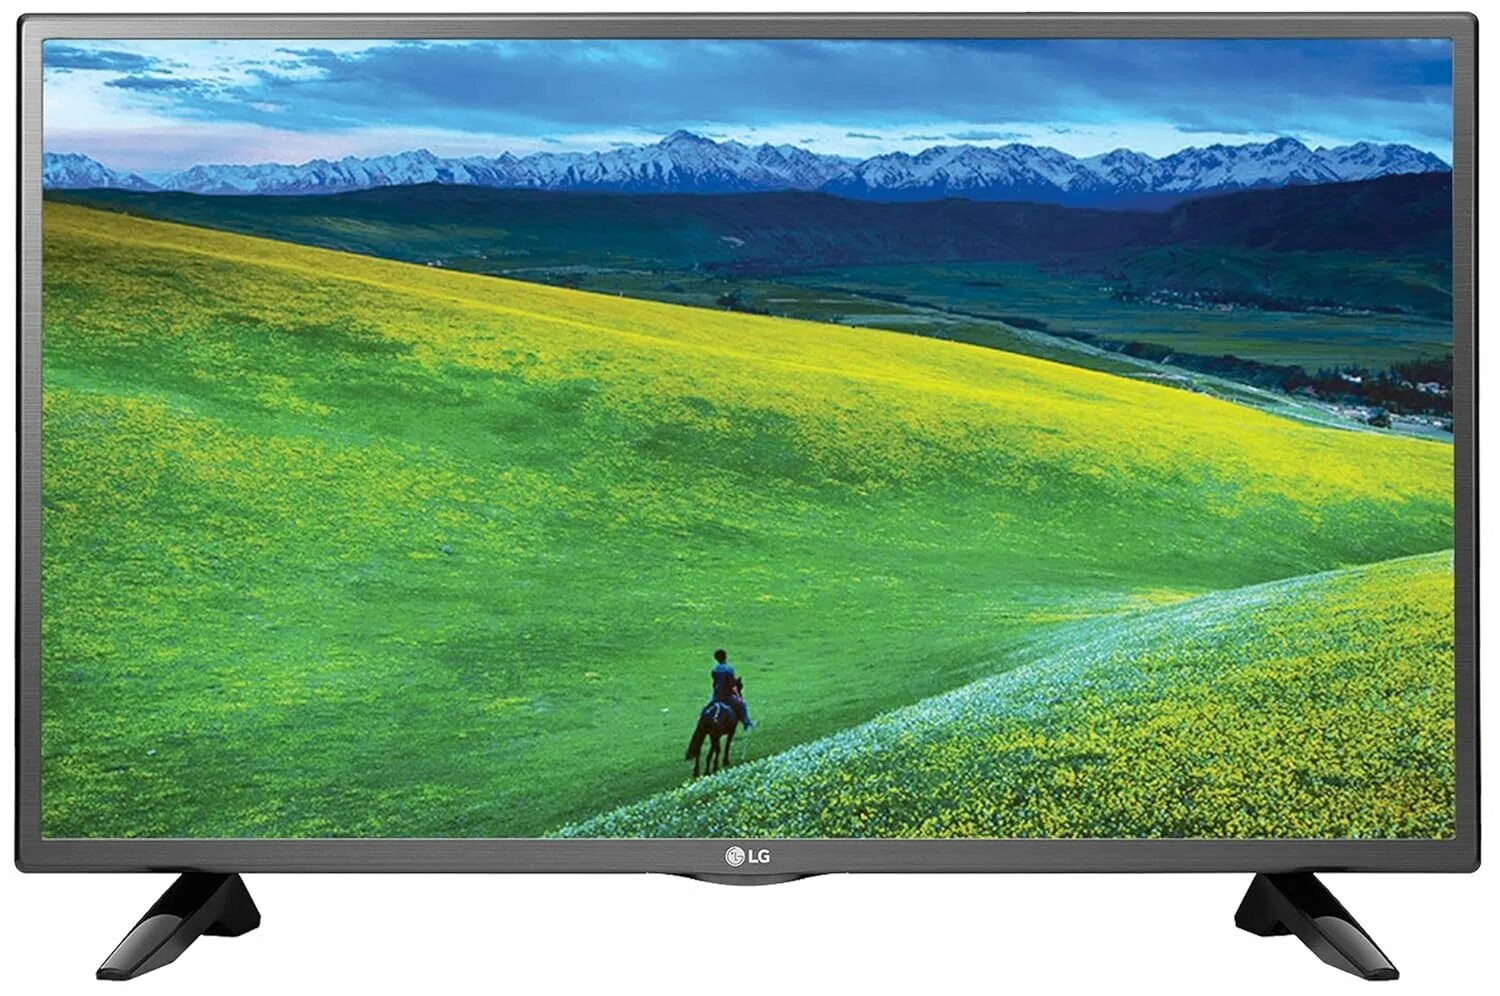 Купить телевизор лучшего качества. LG 32lm550b. Телевизор LG 32lm550b. Телевизор led 32 LG 32lm550b. LG 32 inch.